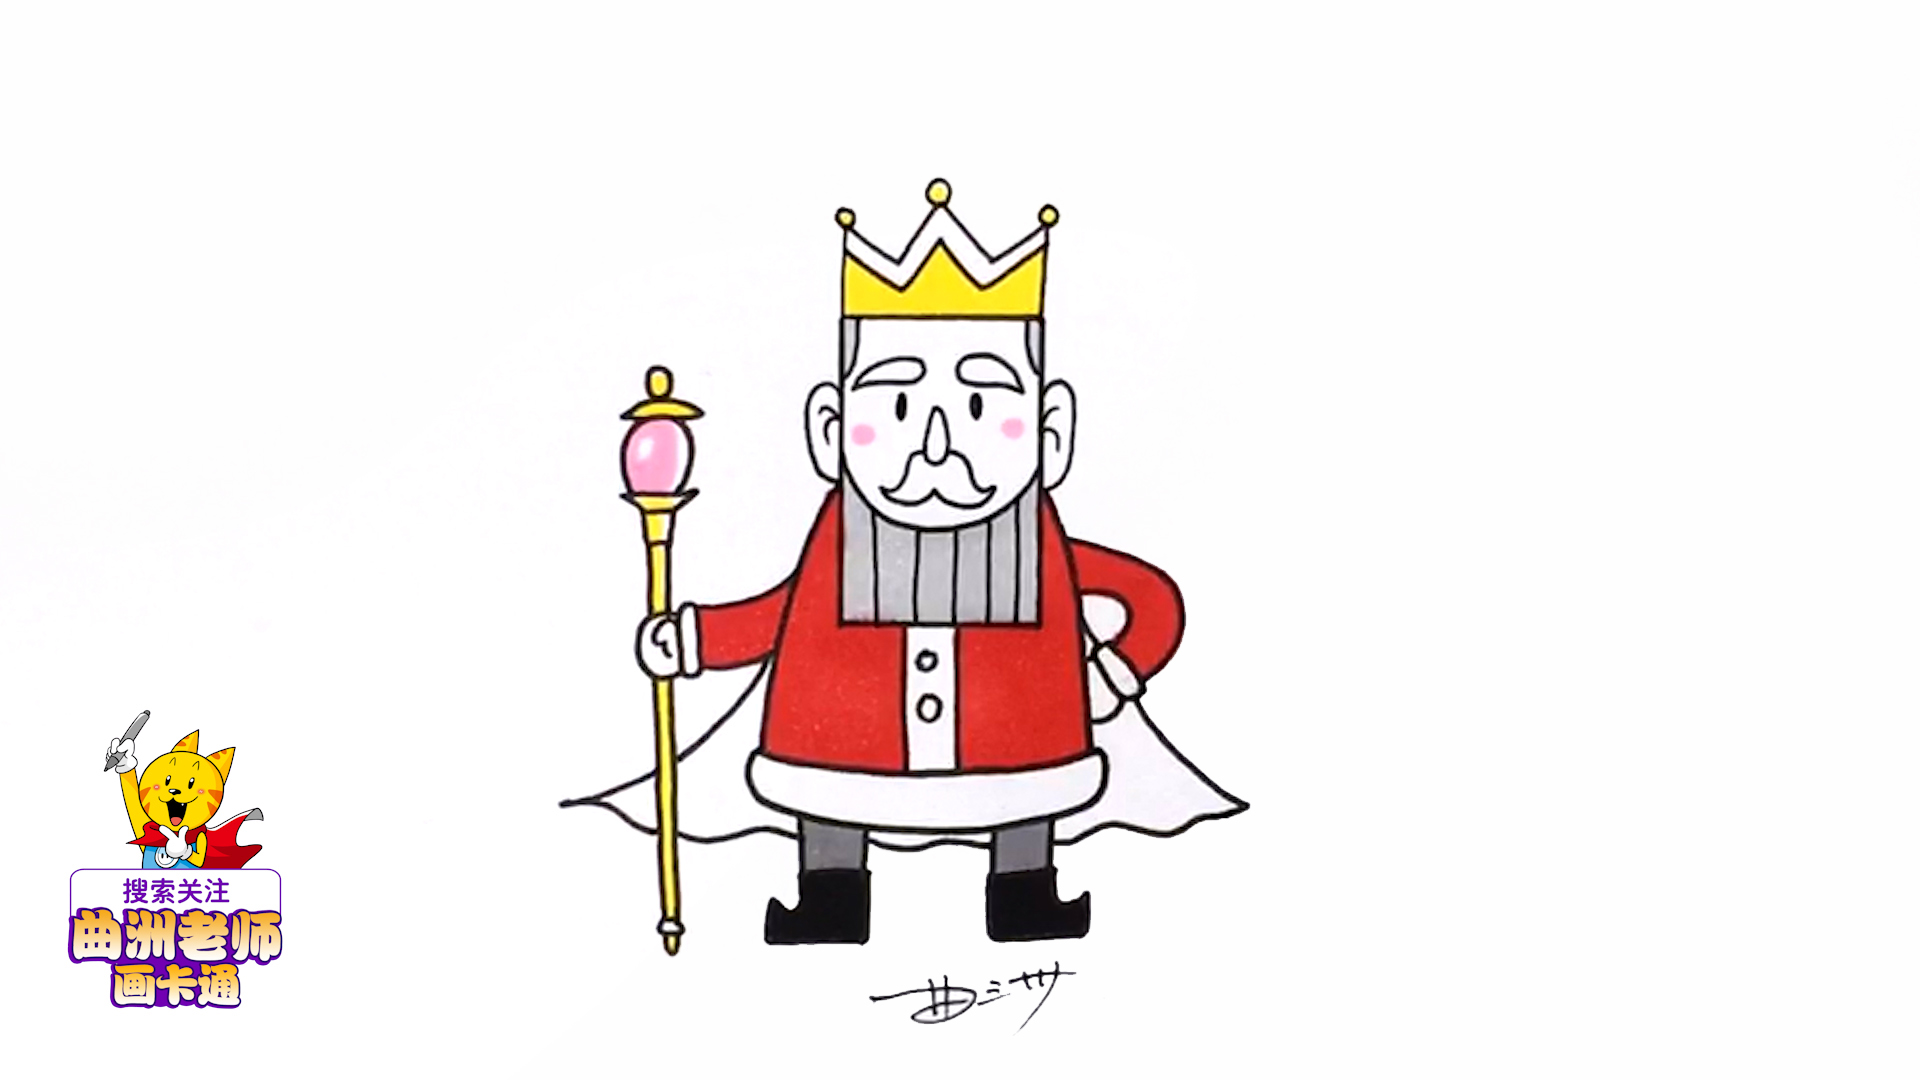 一分钟简笔画,教孩子用长方形画出一位帅气的国王